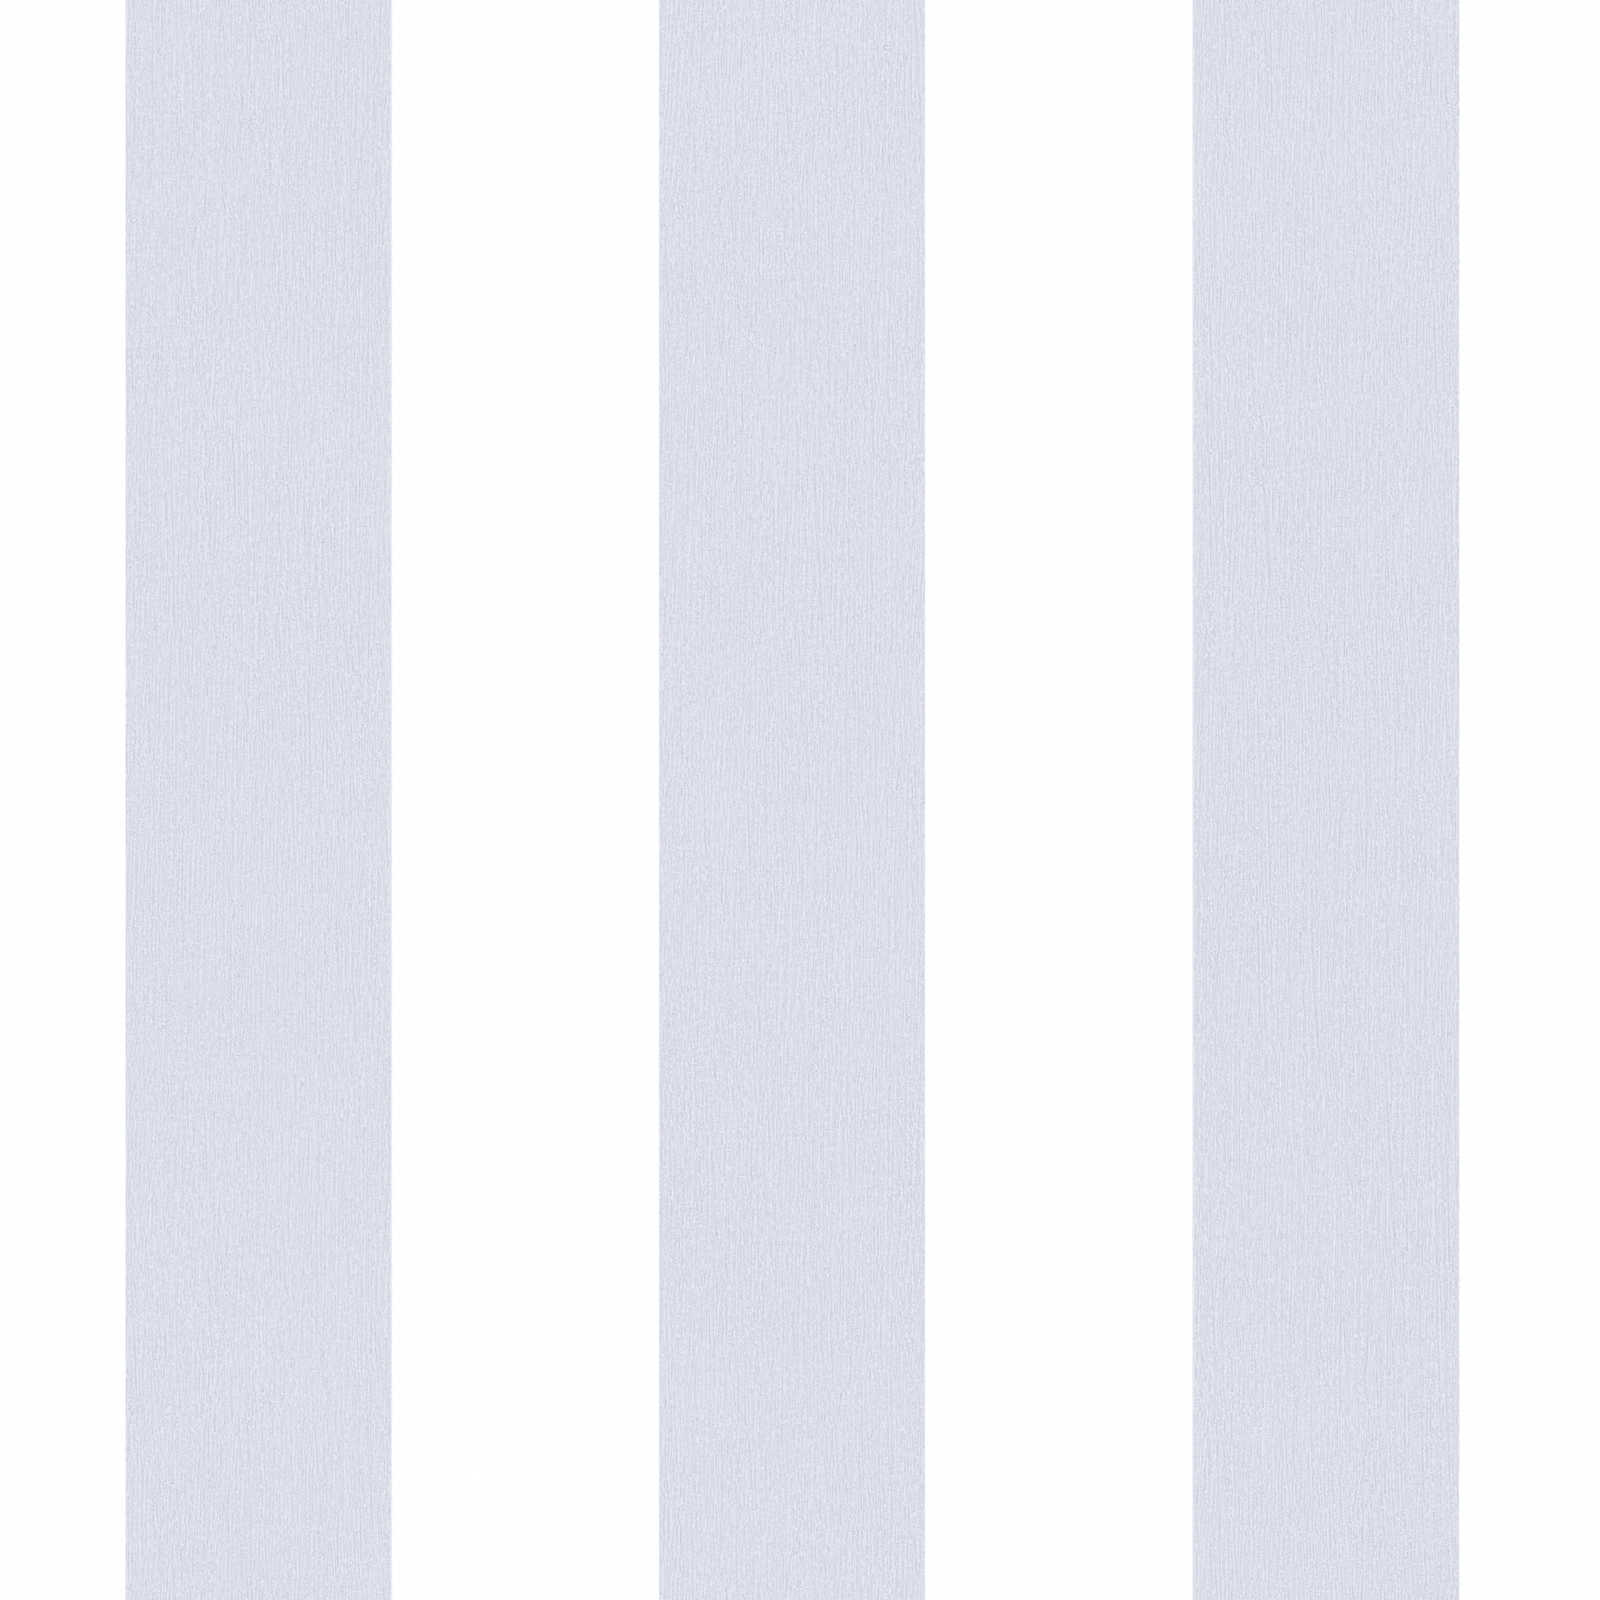 Carta da parati vivaio a righe verticali - grigio, bianco
